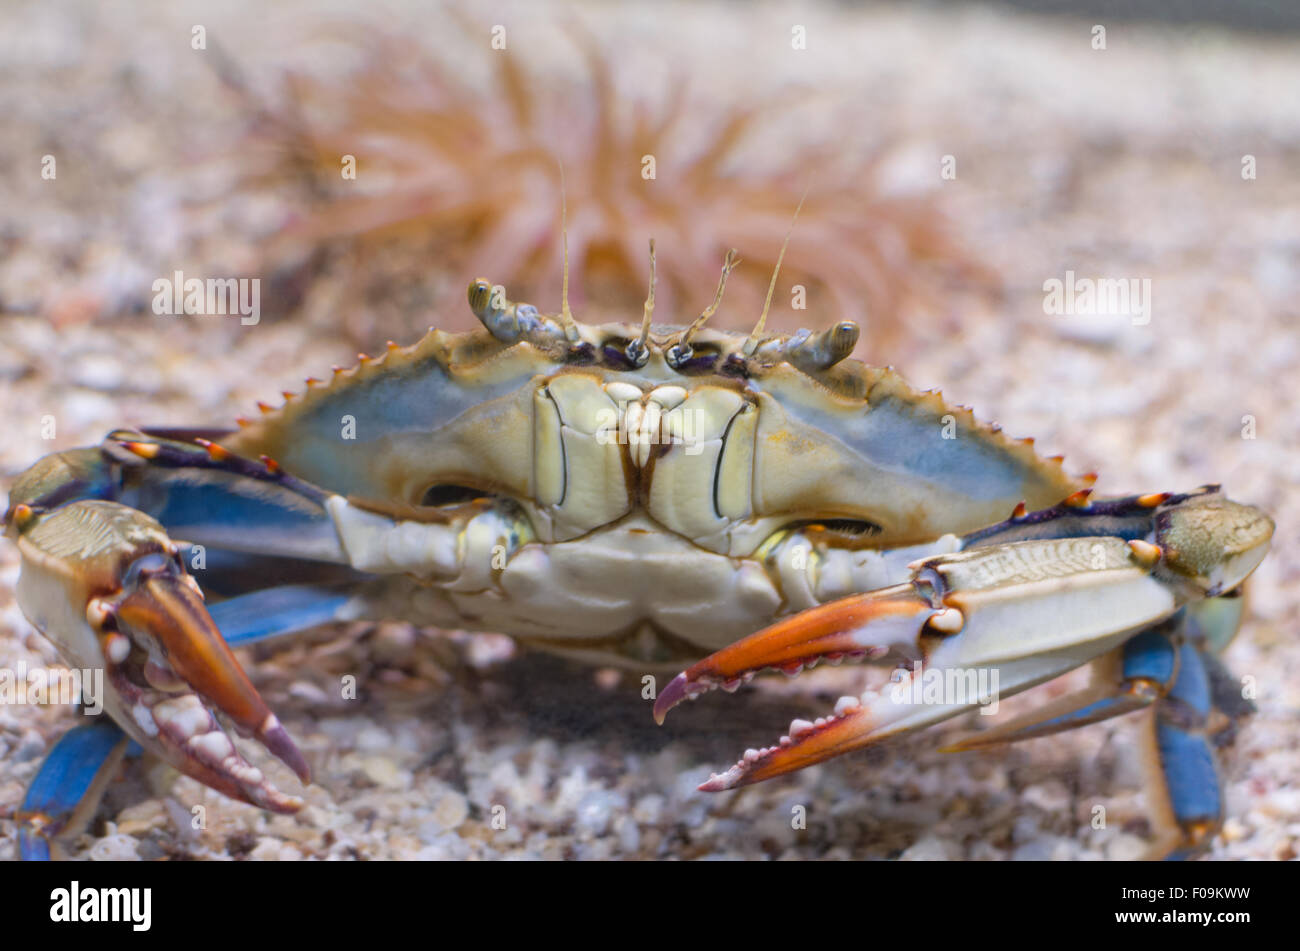 Atlantic Blue Crab con pinze arancione Closeup anteriore Foto Stock